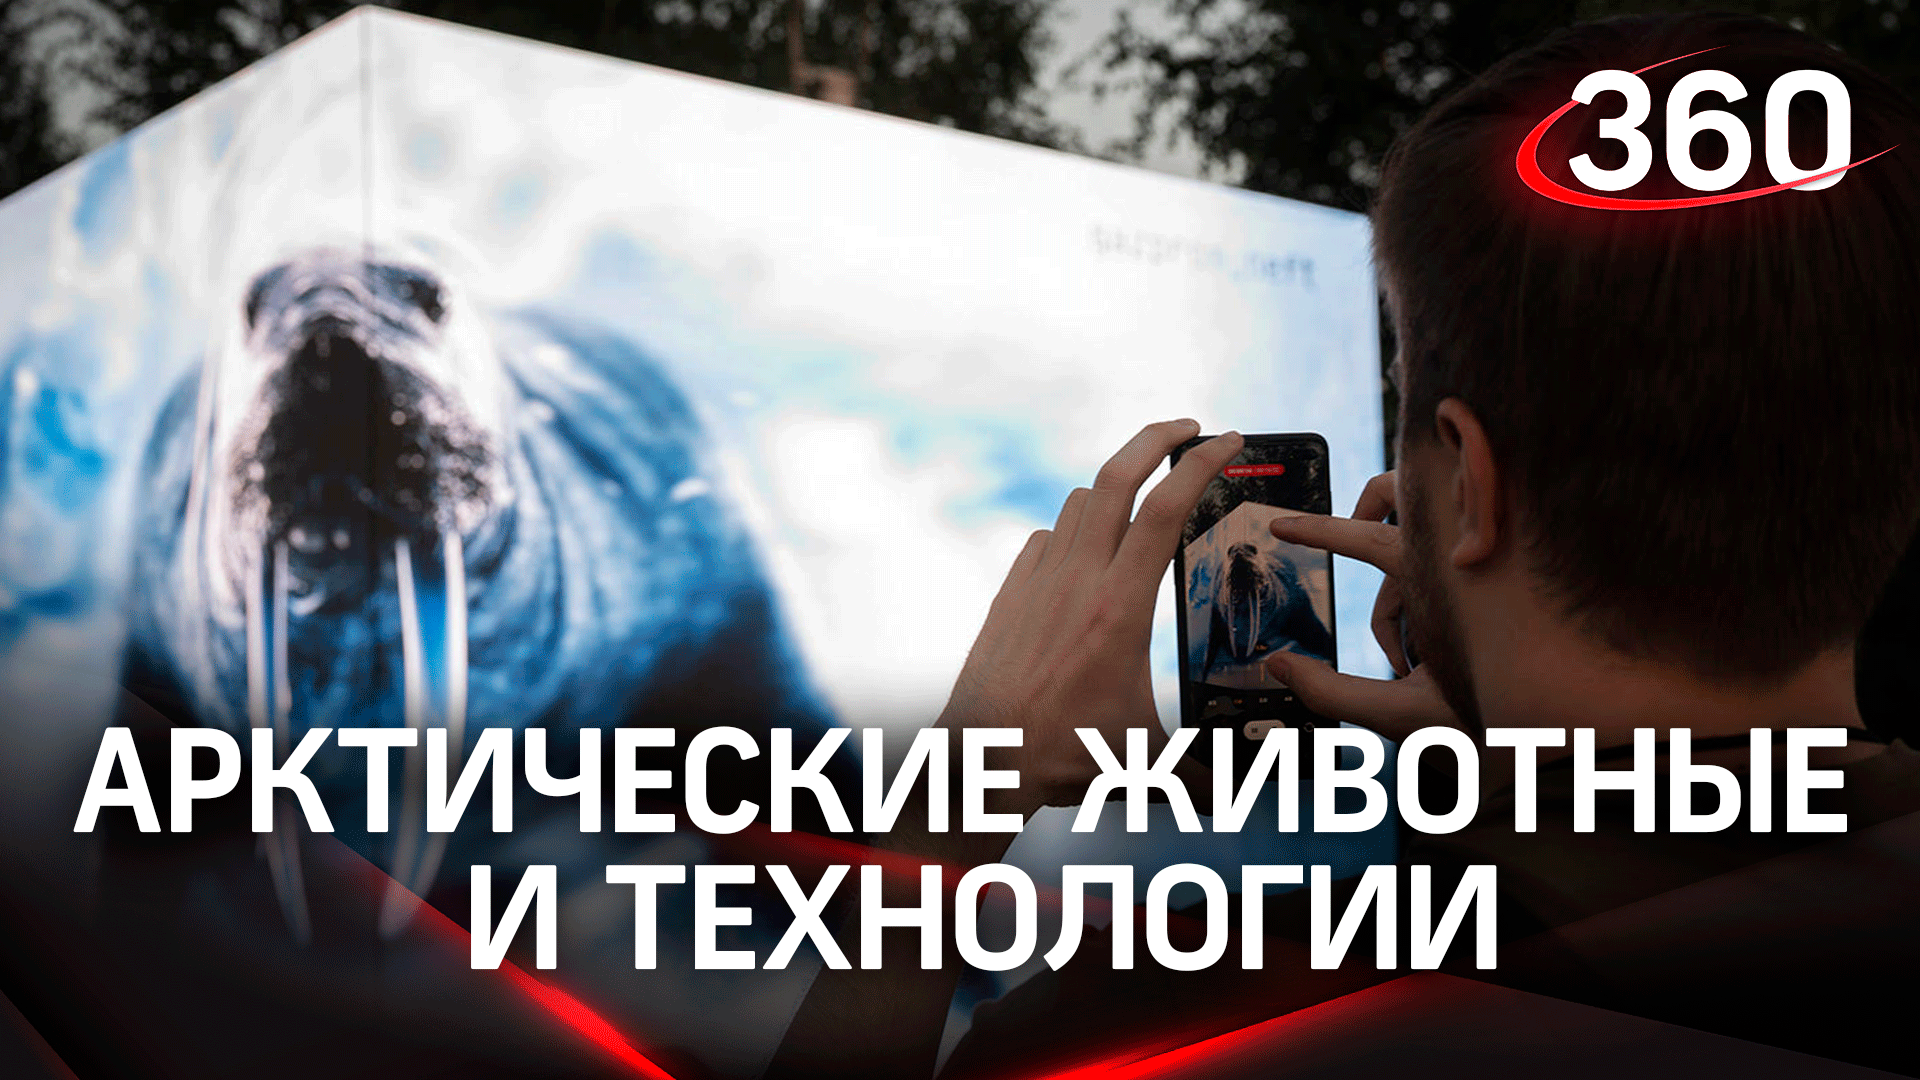 Лед в центре Москвы: в Зарядье появился арт-объект о российской Арктике